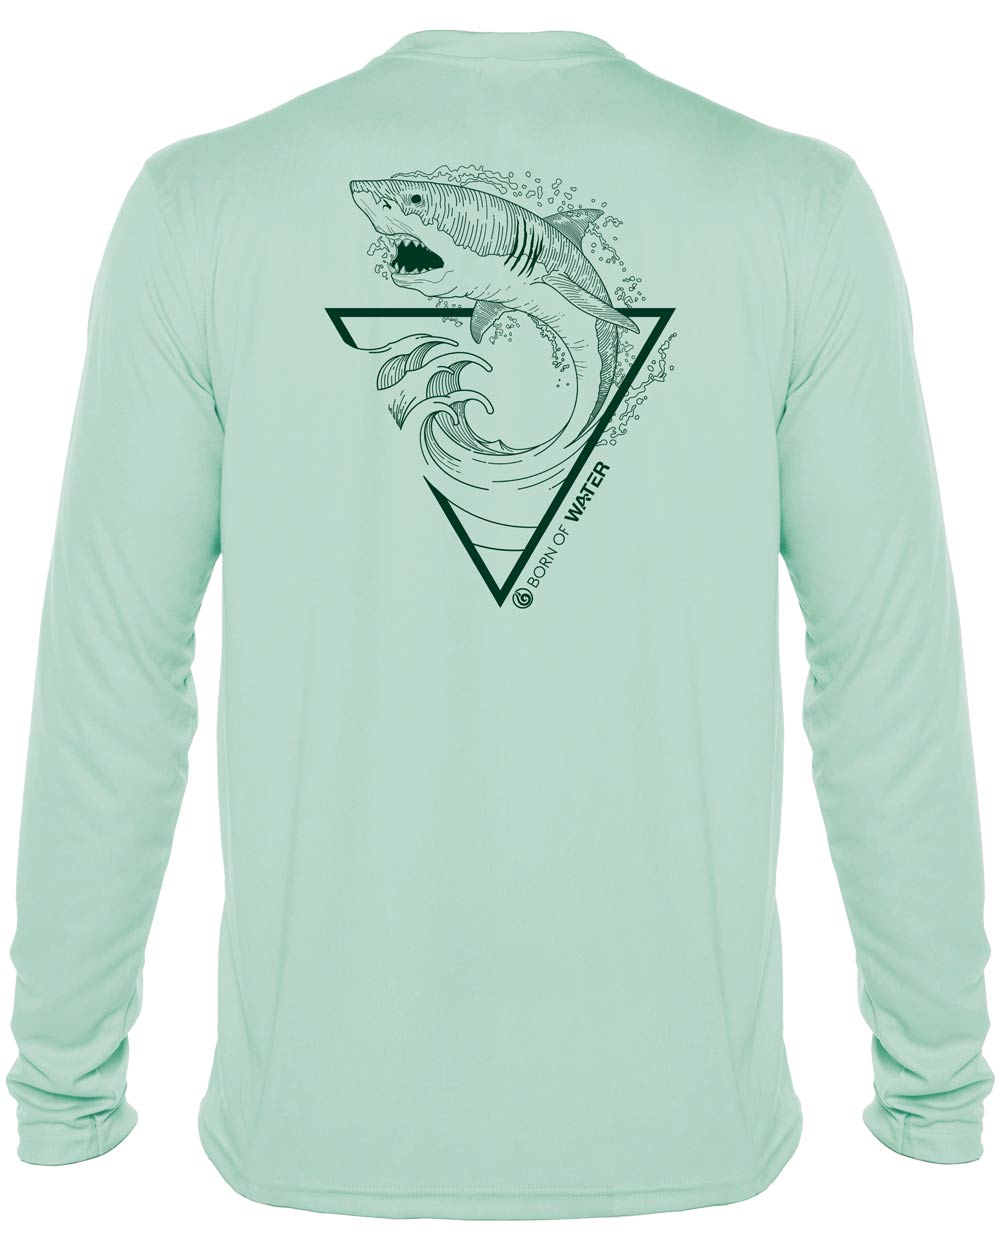 Great White Shark: Men's UV Shirt